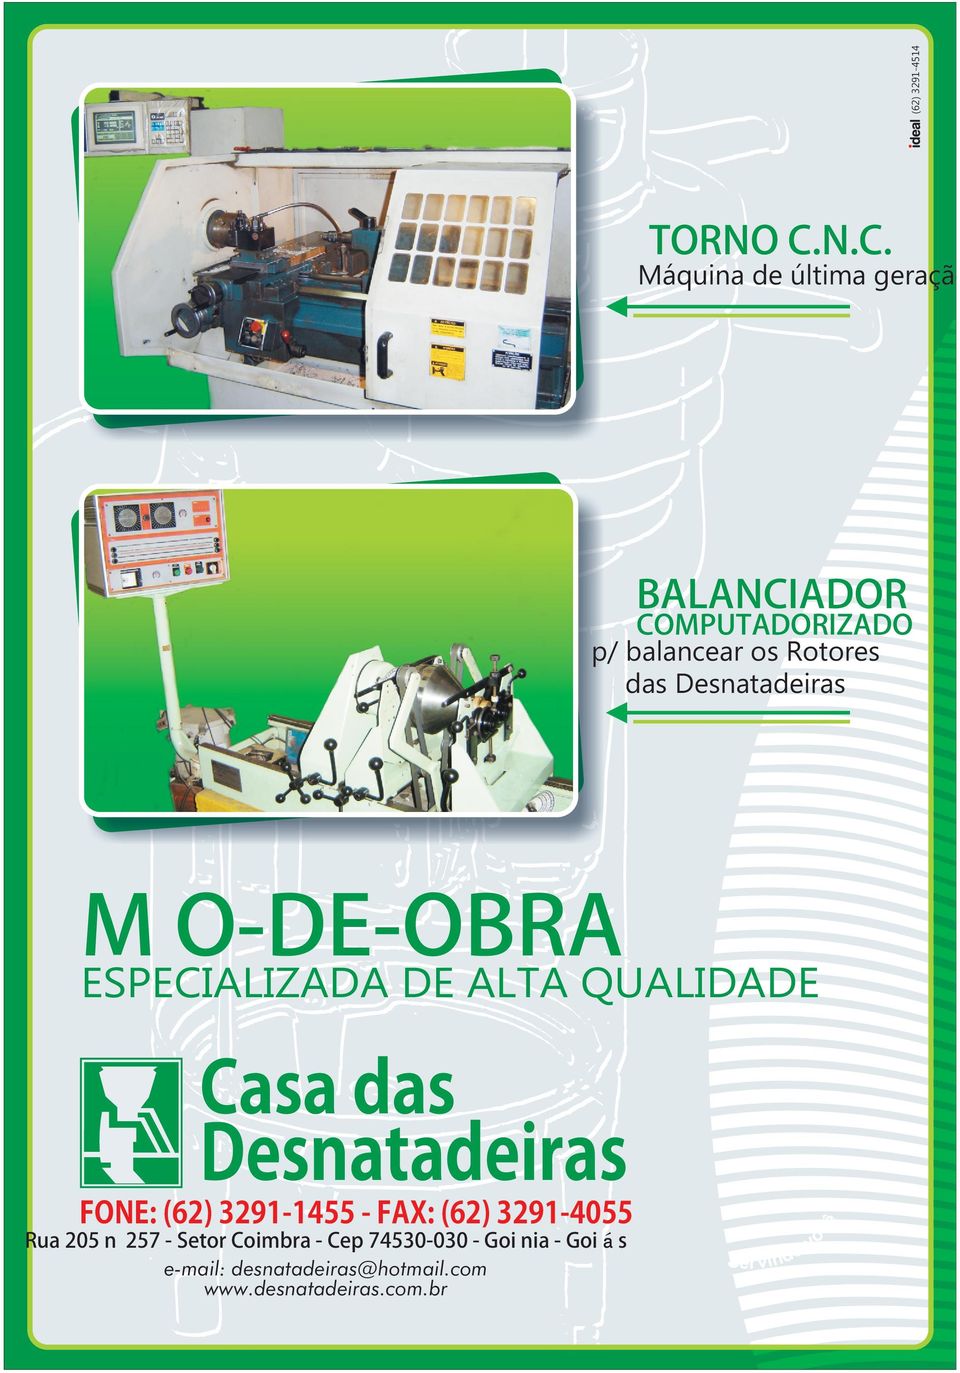 Rotores das M O-DE-OBRA ESPECIALIZADA DE ALTA QUALIDADE FONE: (62) 3291-1455 -